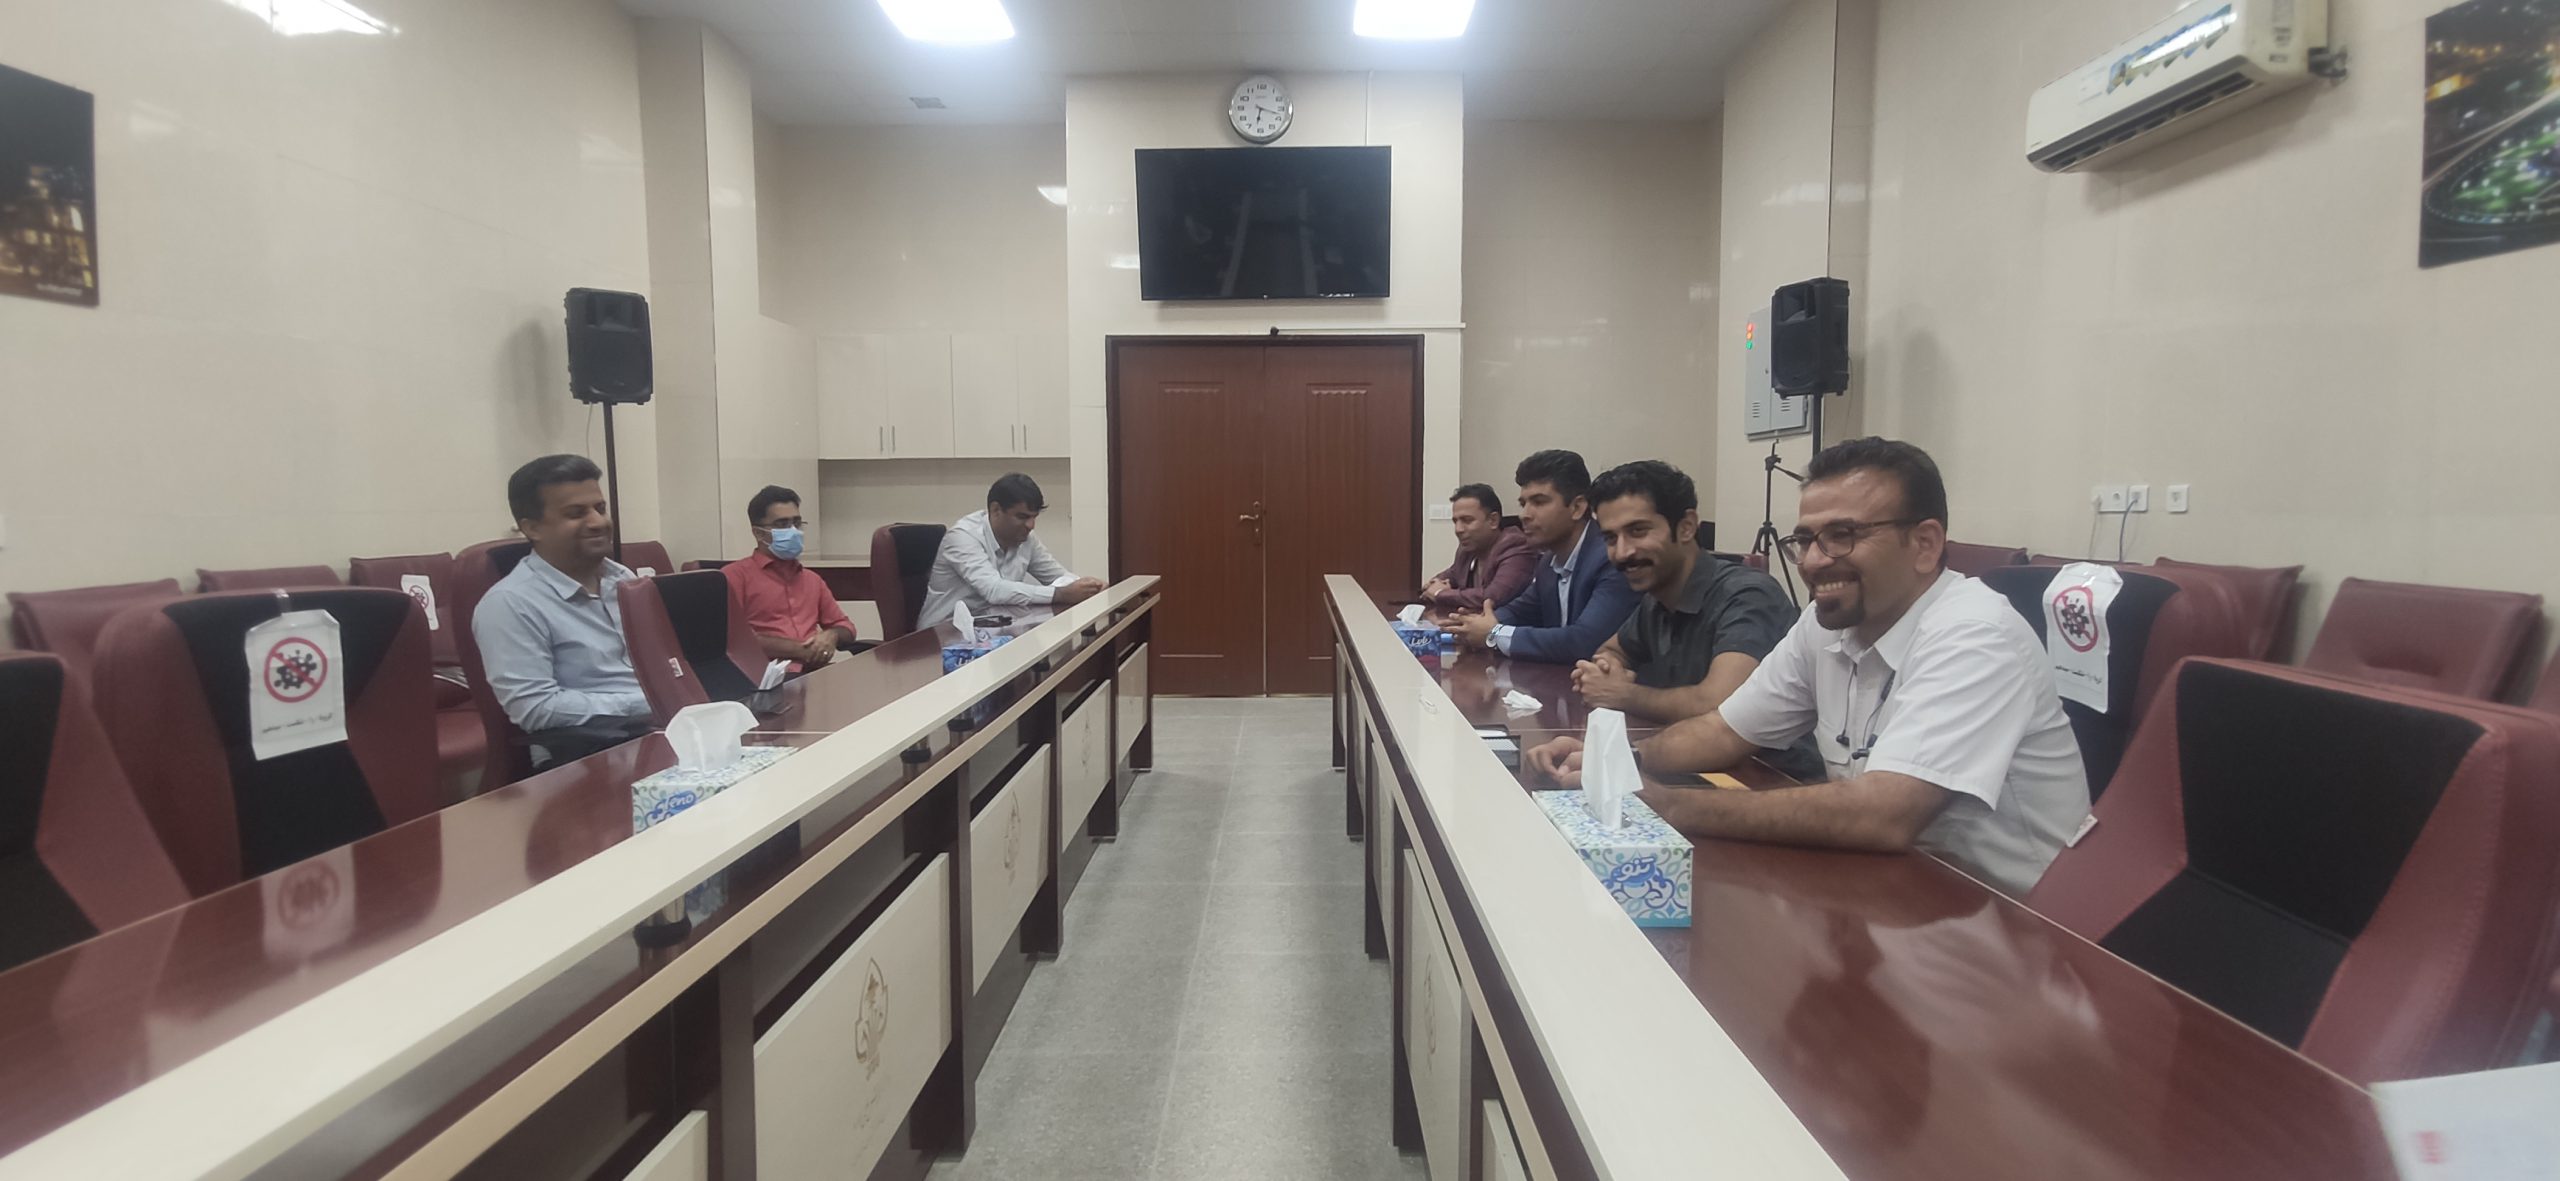 برگزاری سومین جلسه ی مجمع عمومی موسسه ی توسعه پایدار لامرد در مرکز آموزش عالی لامرد